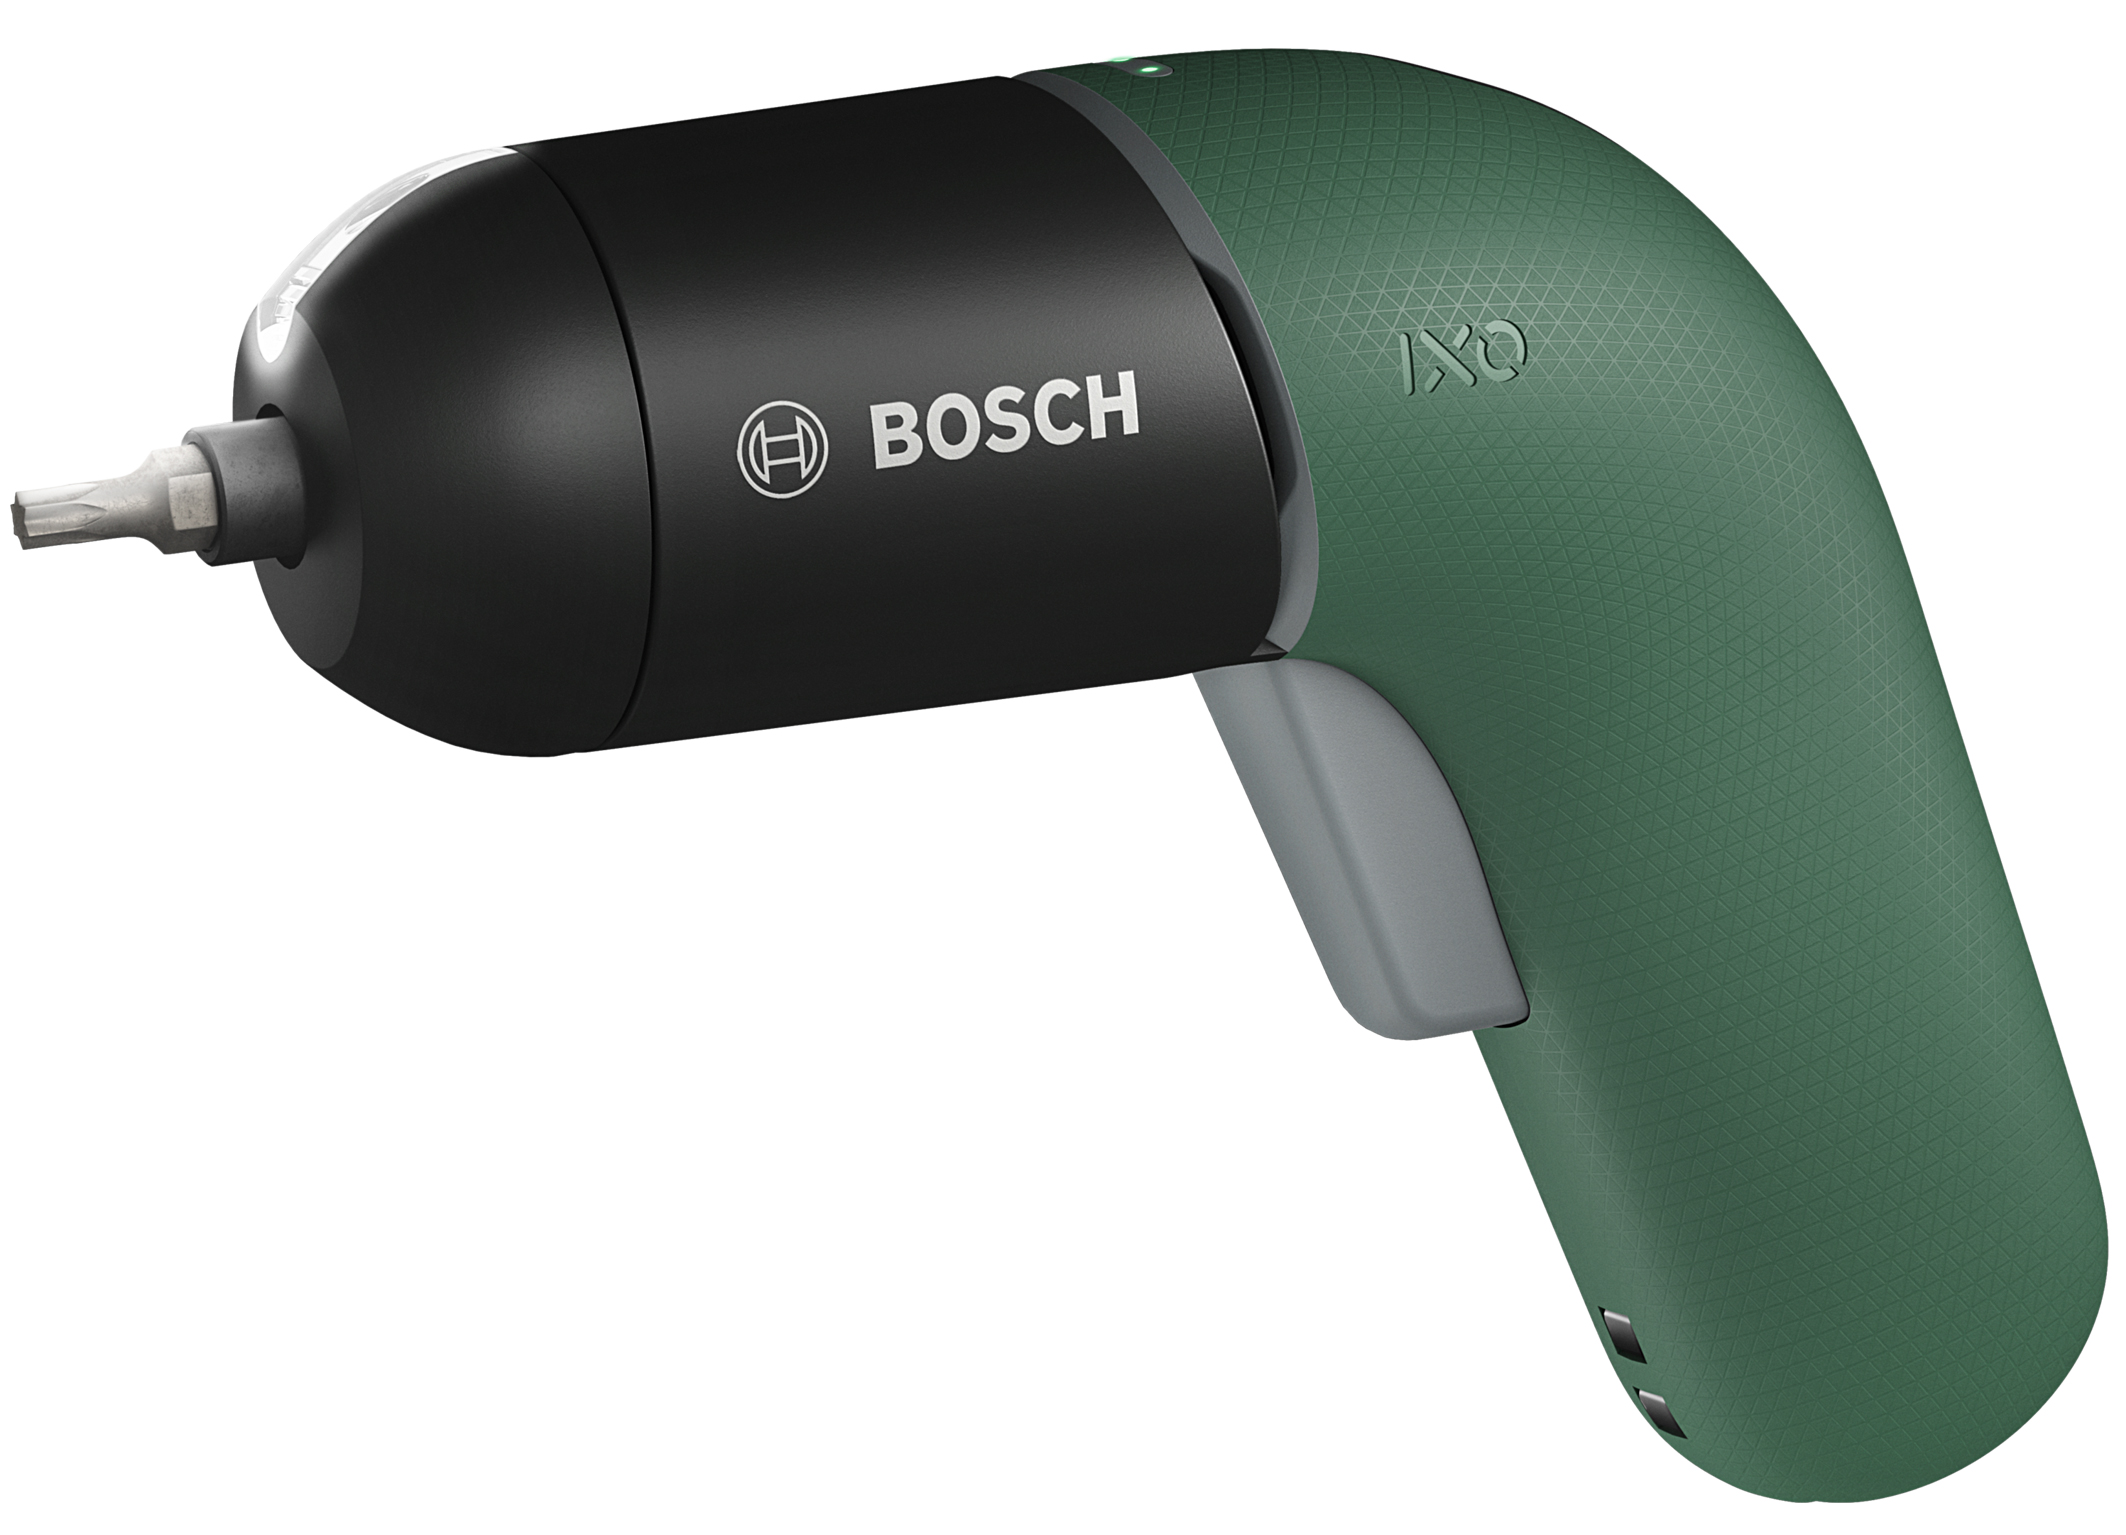 Innovazione orientata agli utilizzatori - Bosch rivoluziona gli elettroutensili